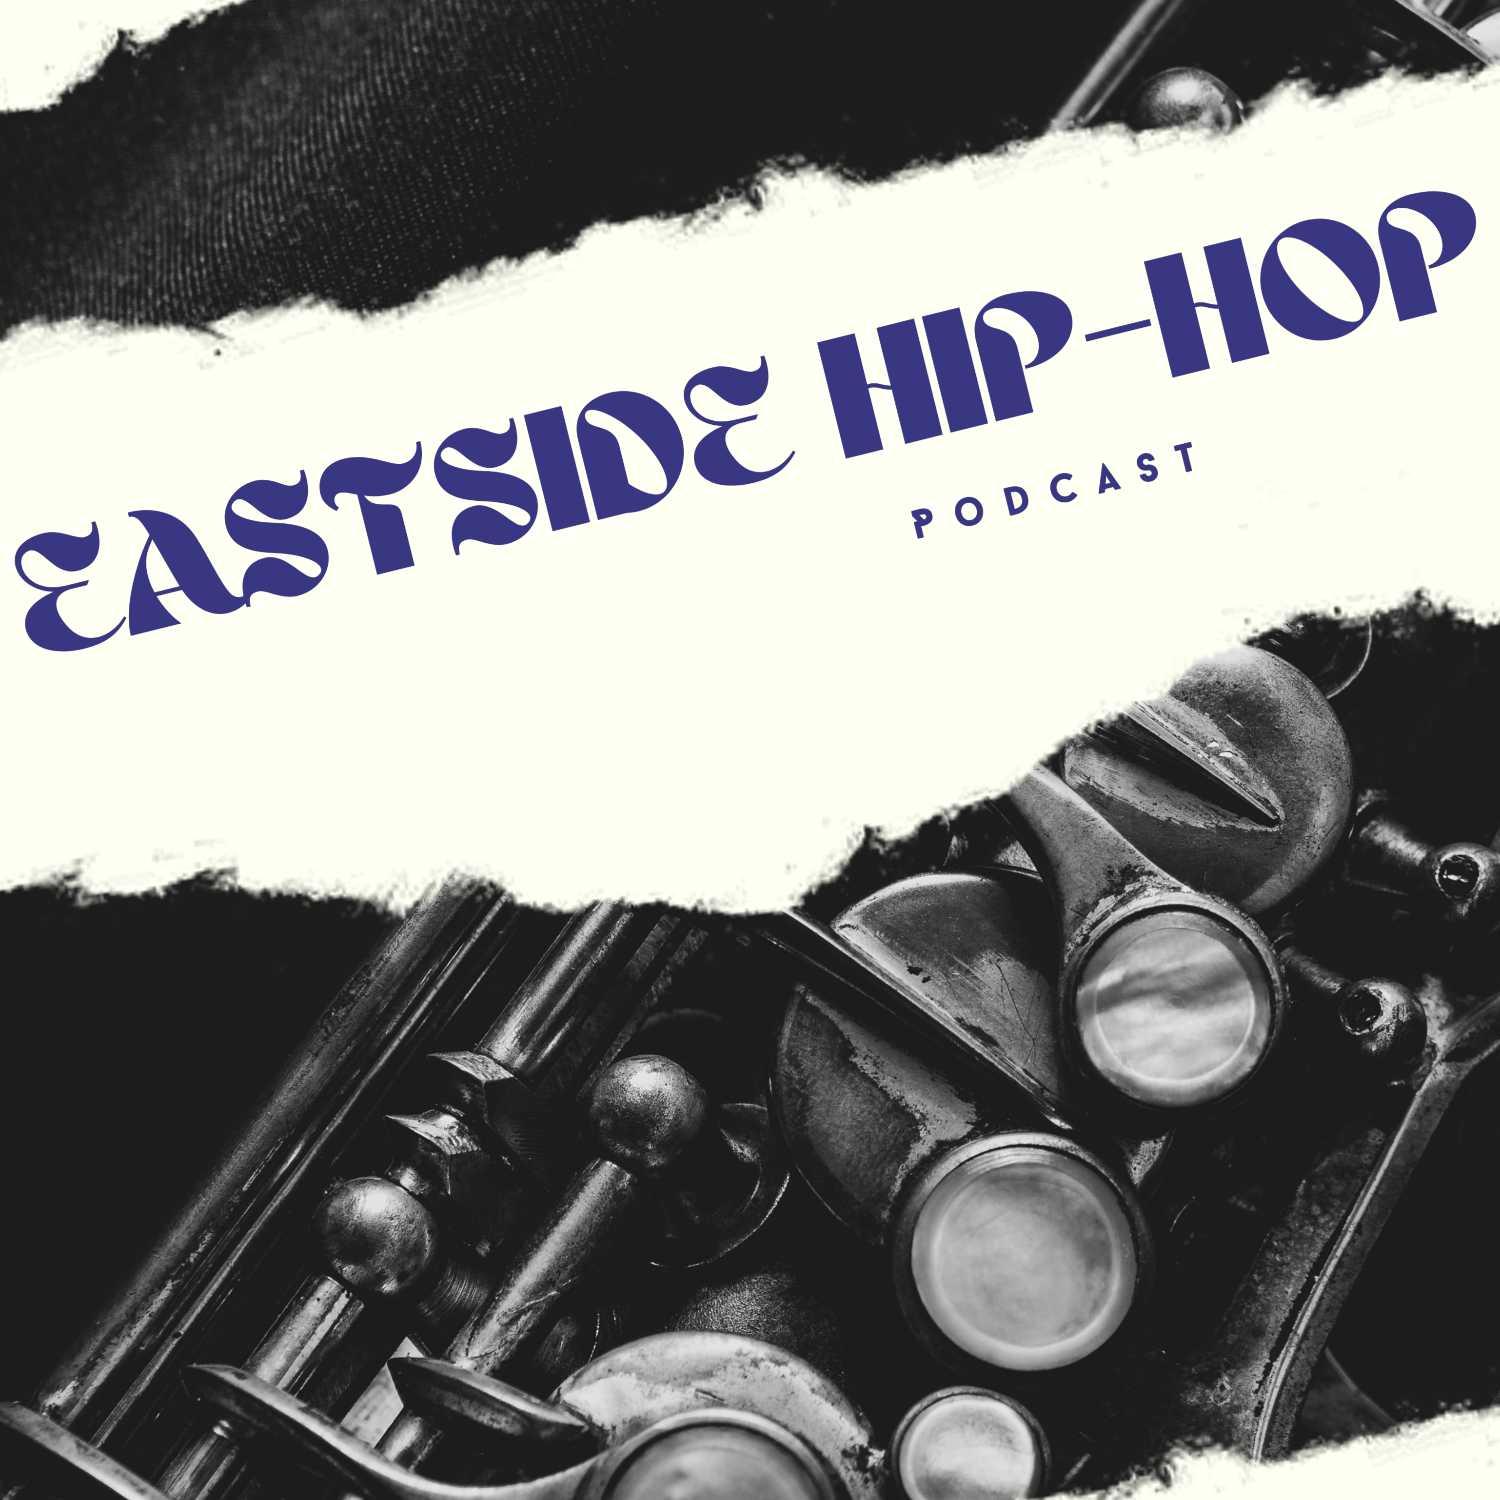 Eastside Hip-Hop